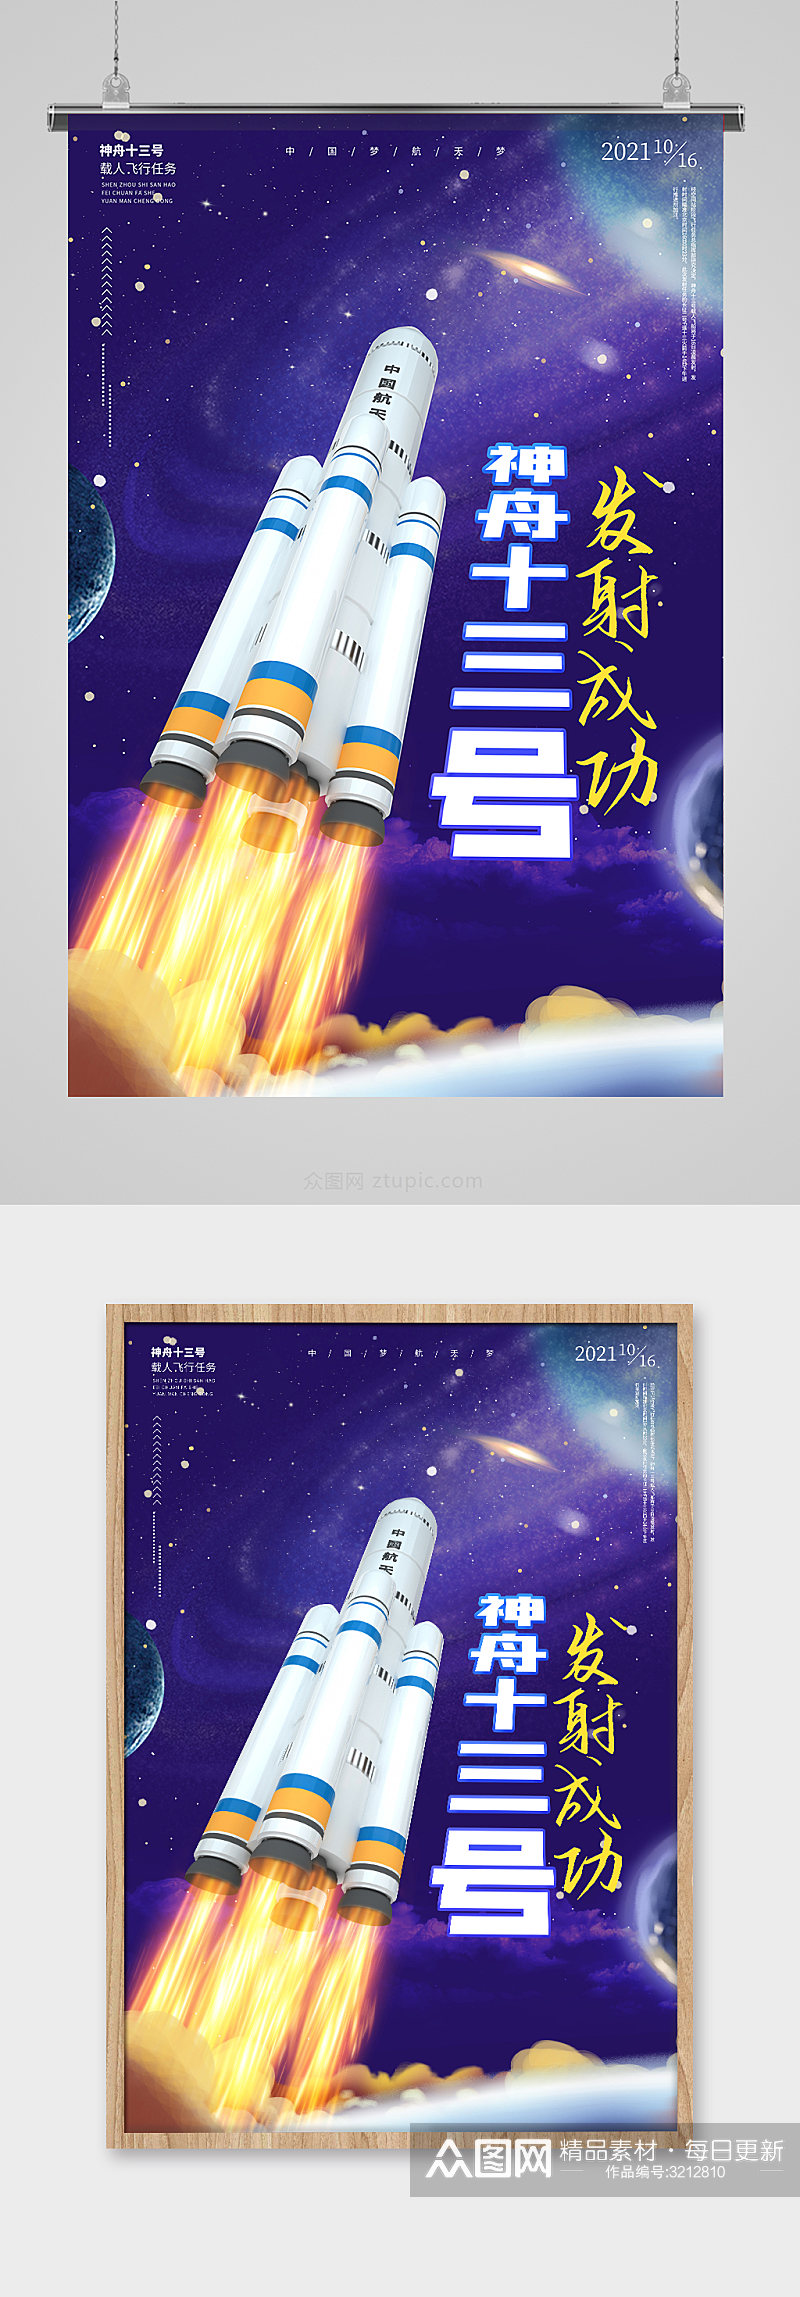 神舟十三号发射成功海报中国航天海报素材